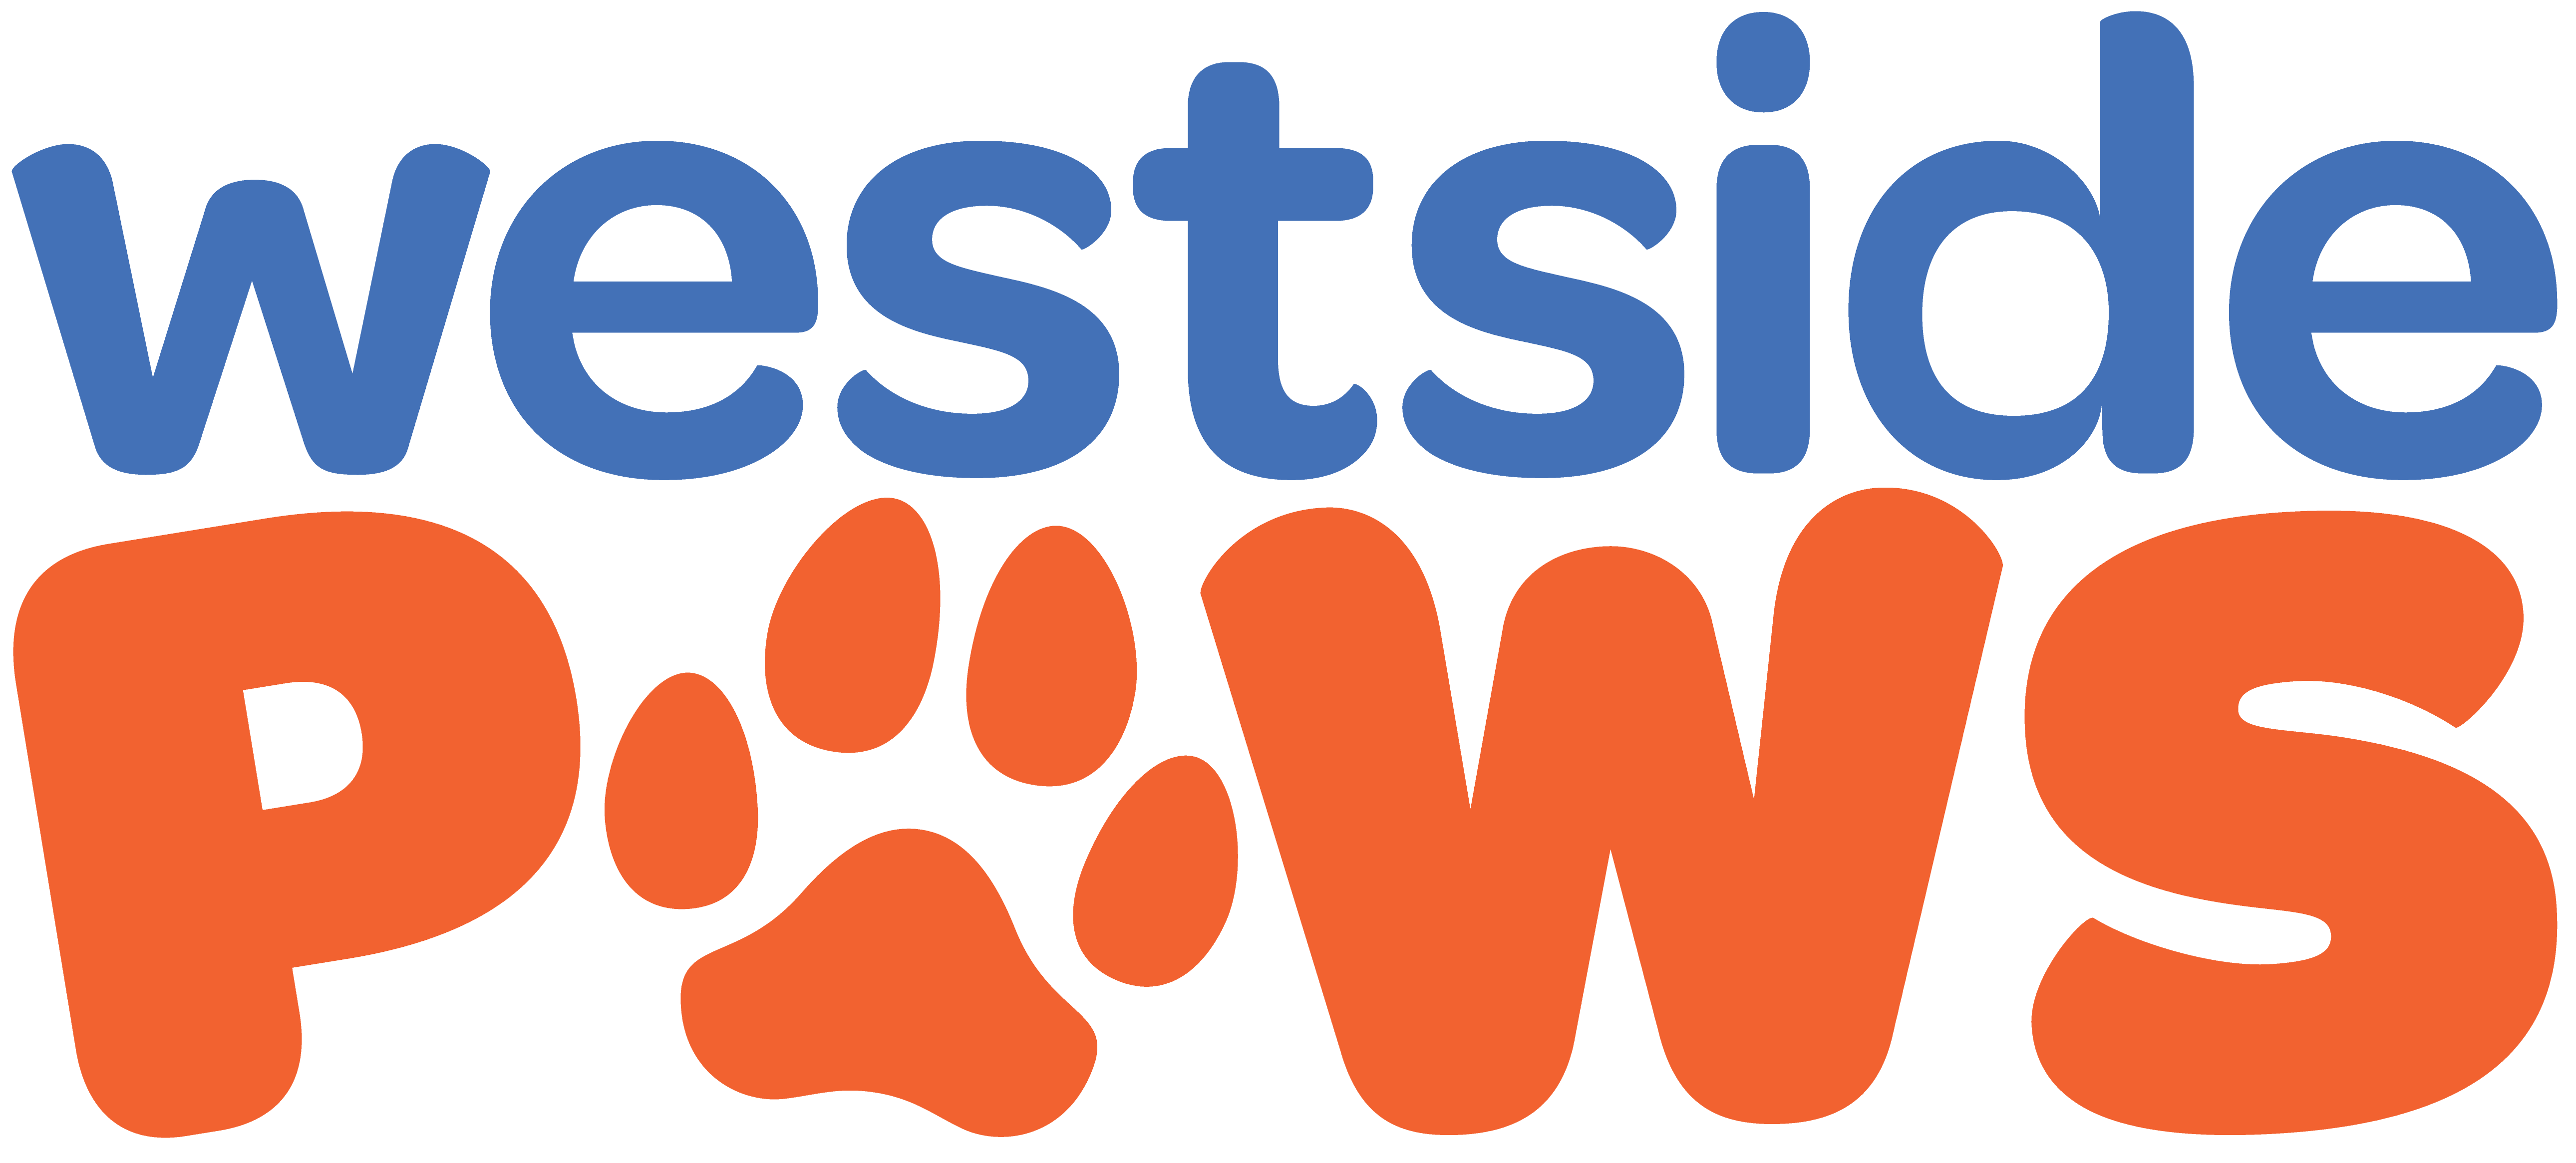 westside paws logo